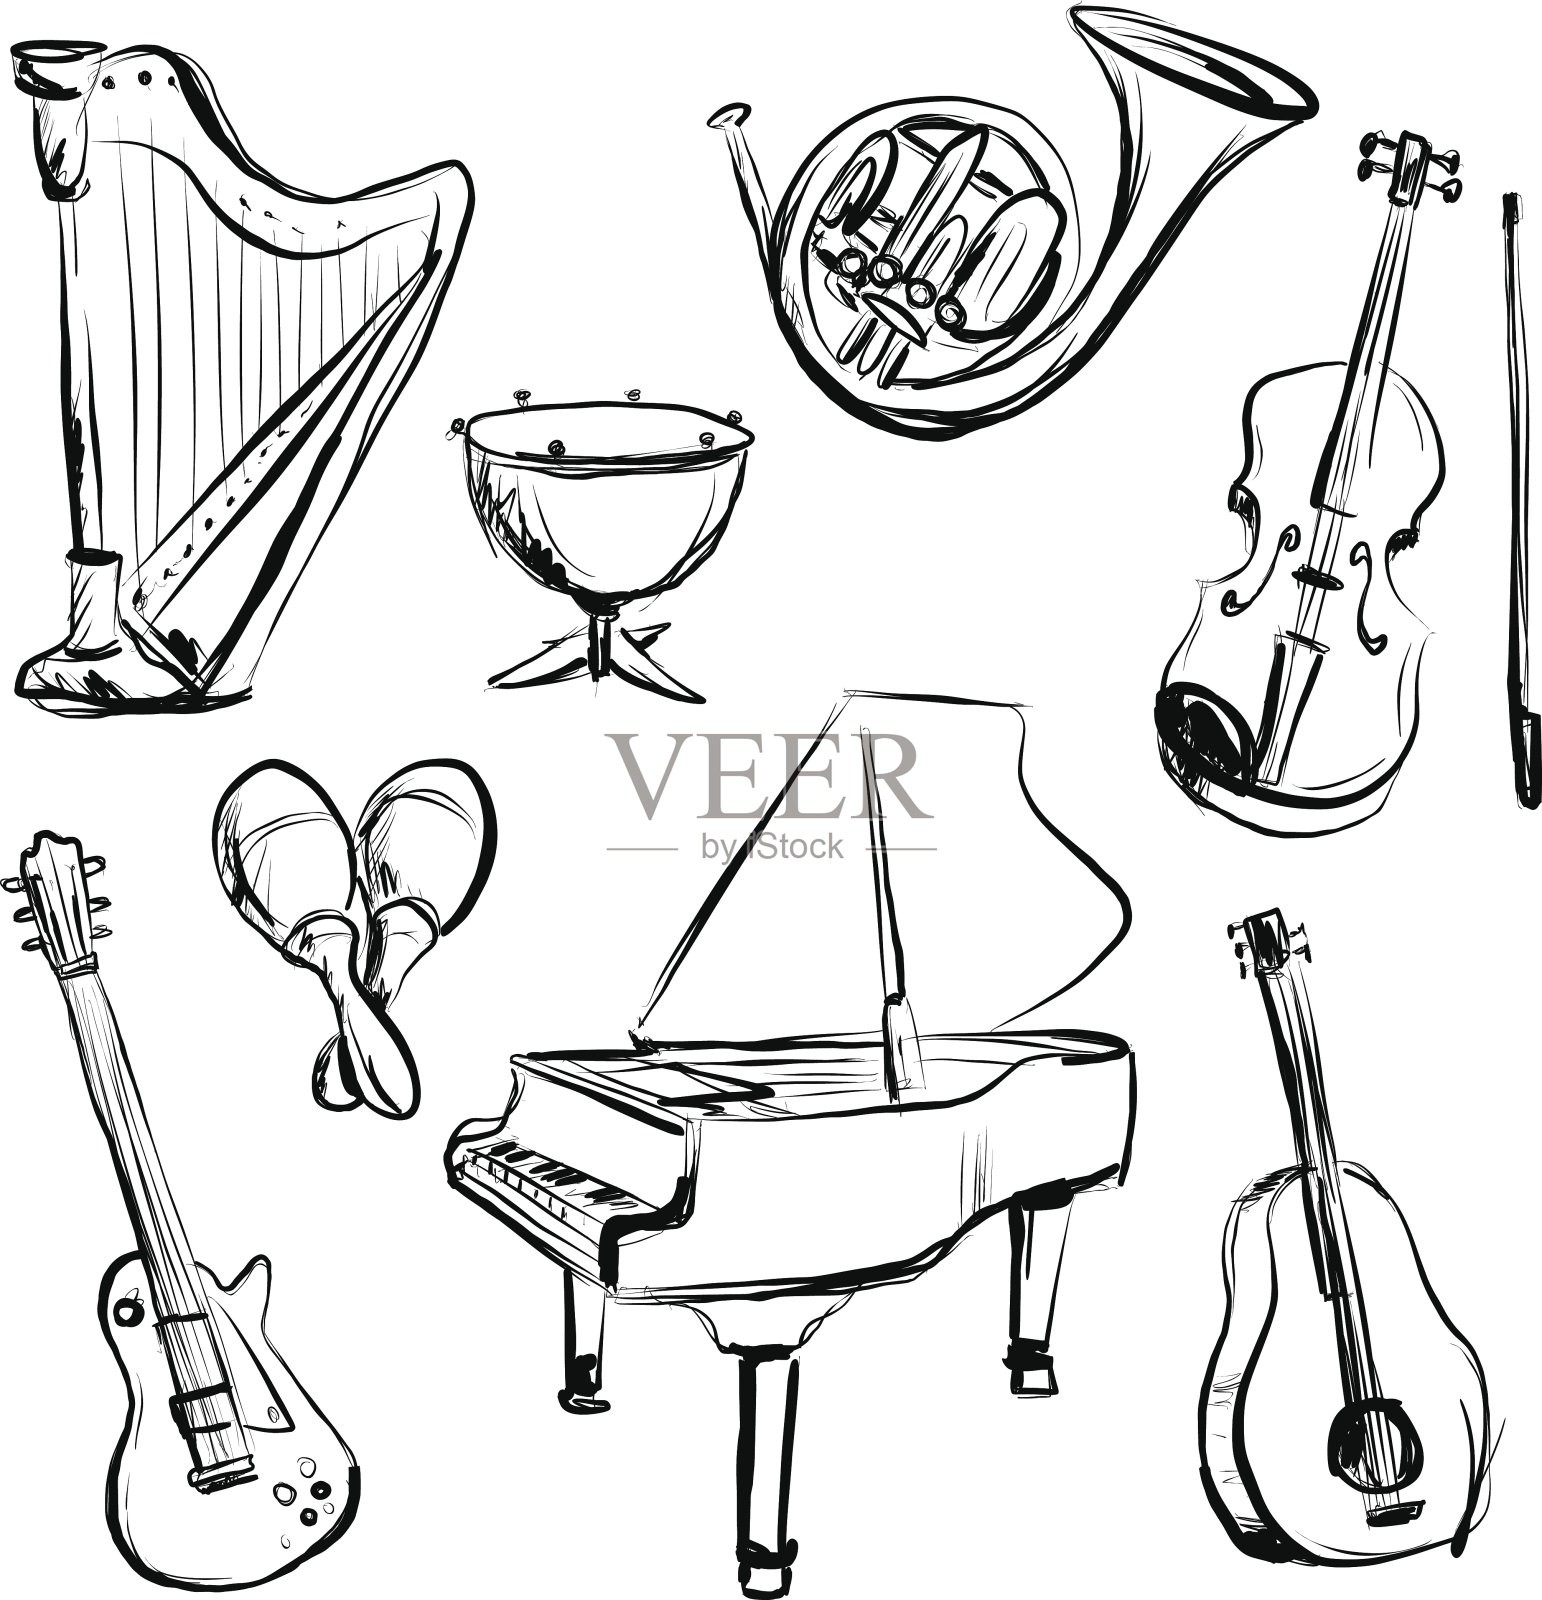 炭笔素描风格的乐器设计元素图片